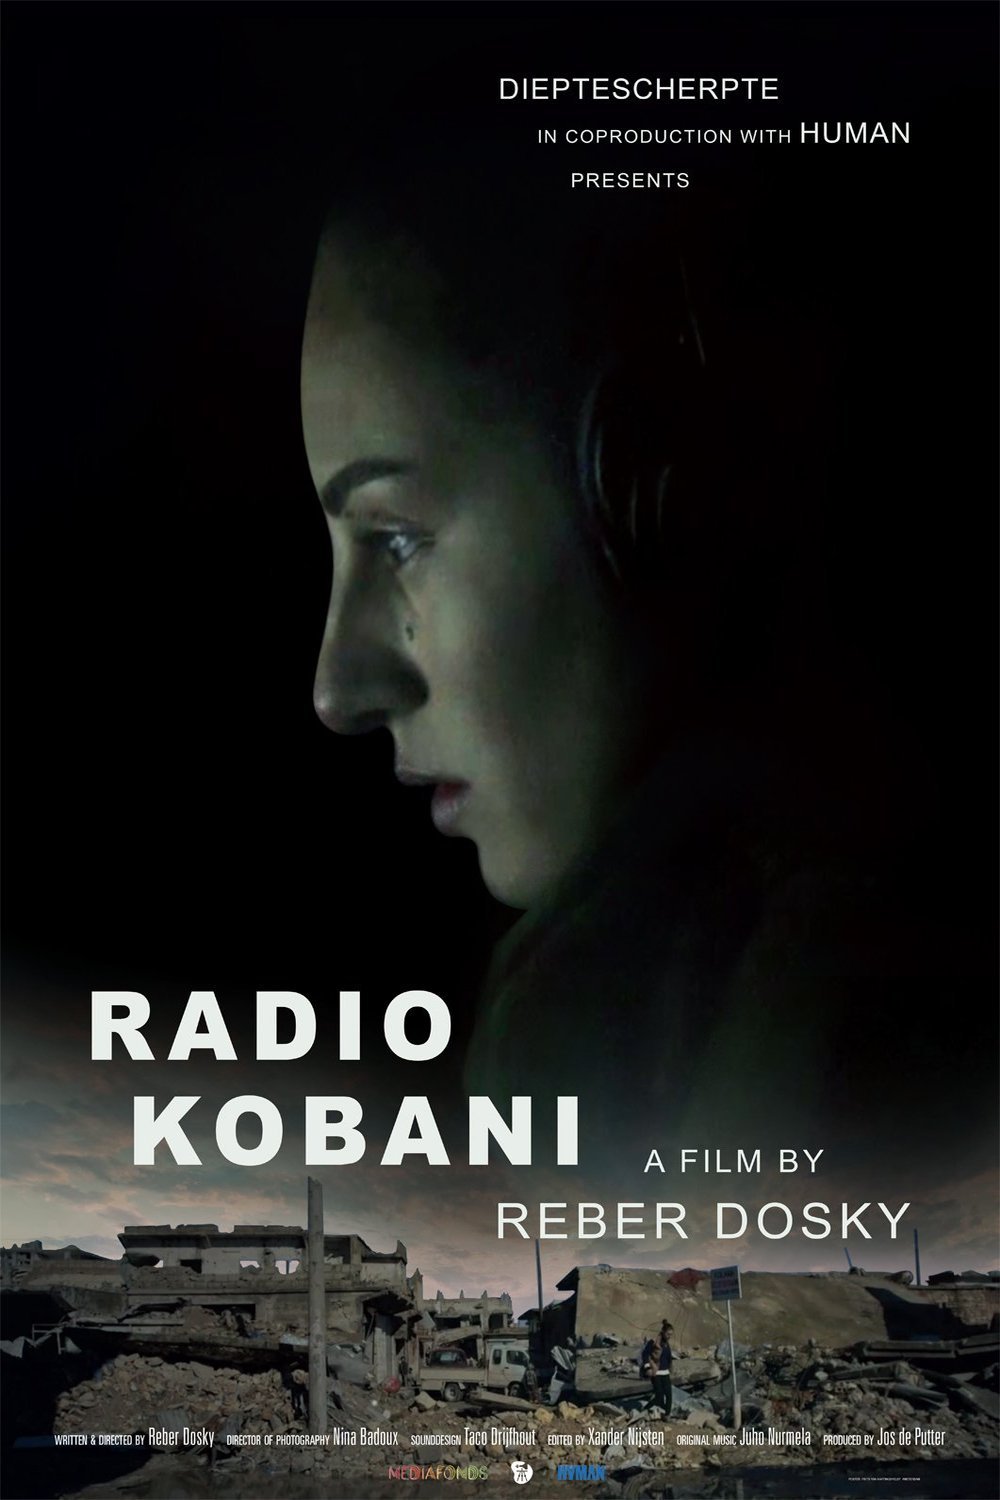 L'affiche originale du film Radio Kobanî en Kurde